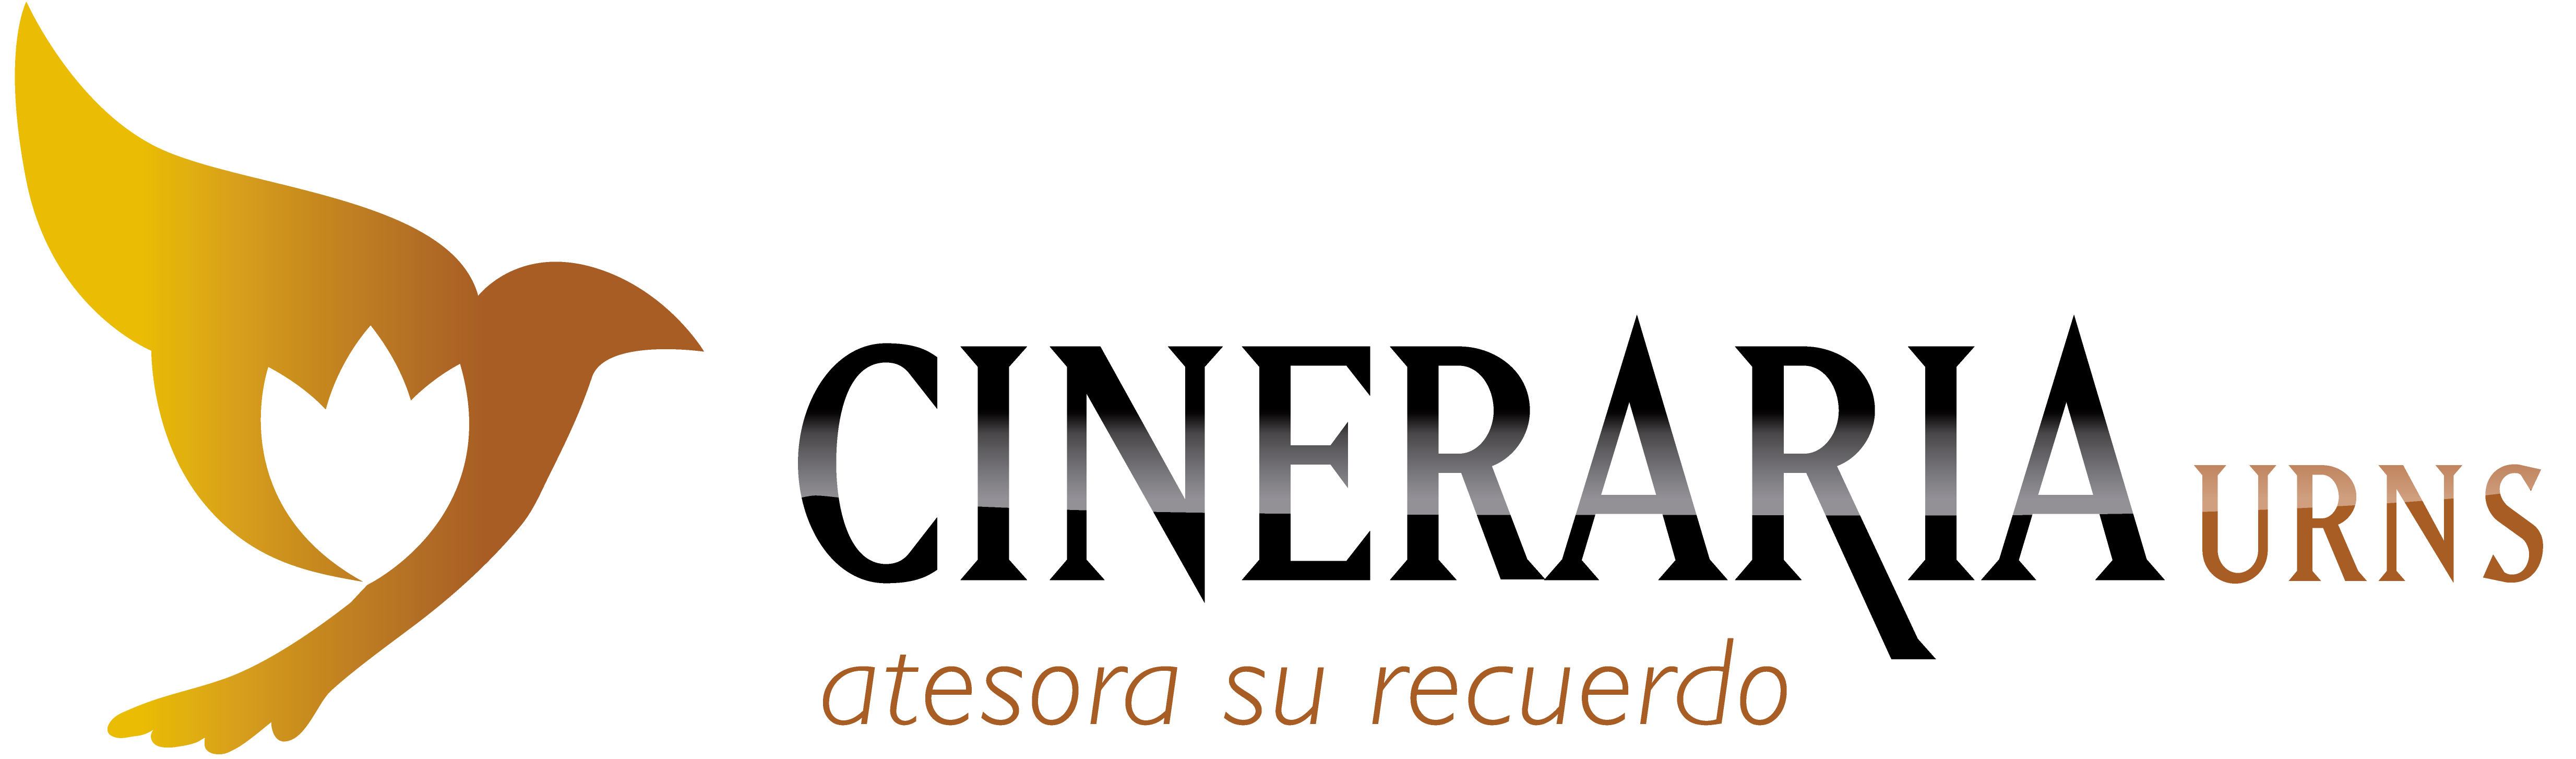 www.urnasyrelicariosfunerarios.es